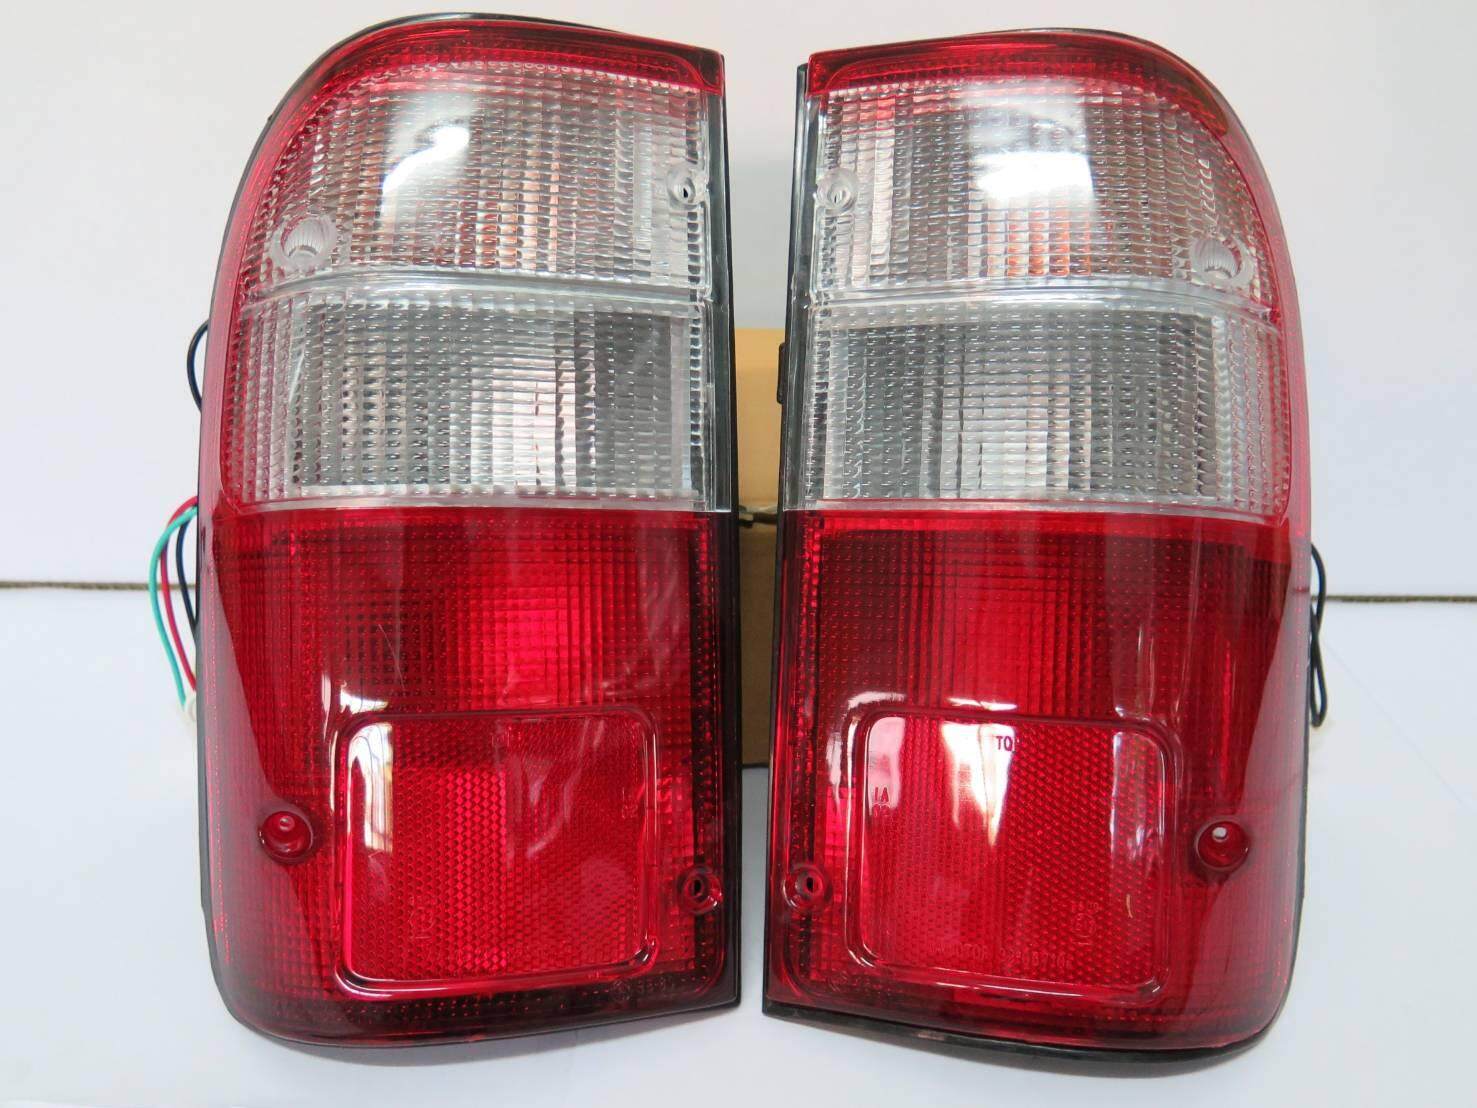 ไฟท้าย TOYOTA TIGER ปี 99-01 LN145 ขาว-แดง โตโยต้า ไทเกอร์ พร้อมขั้ว  1คู่ (ซ้ายและขวา) ไฟท้ายรถกระบะ ราคาถูก คุณภาพดี Tail Light Rear Lamp